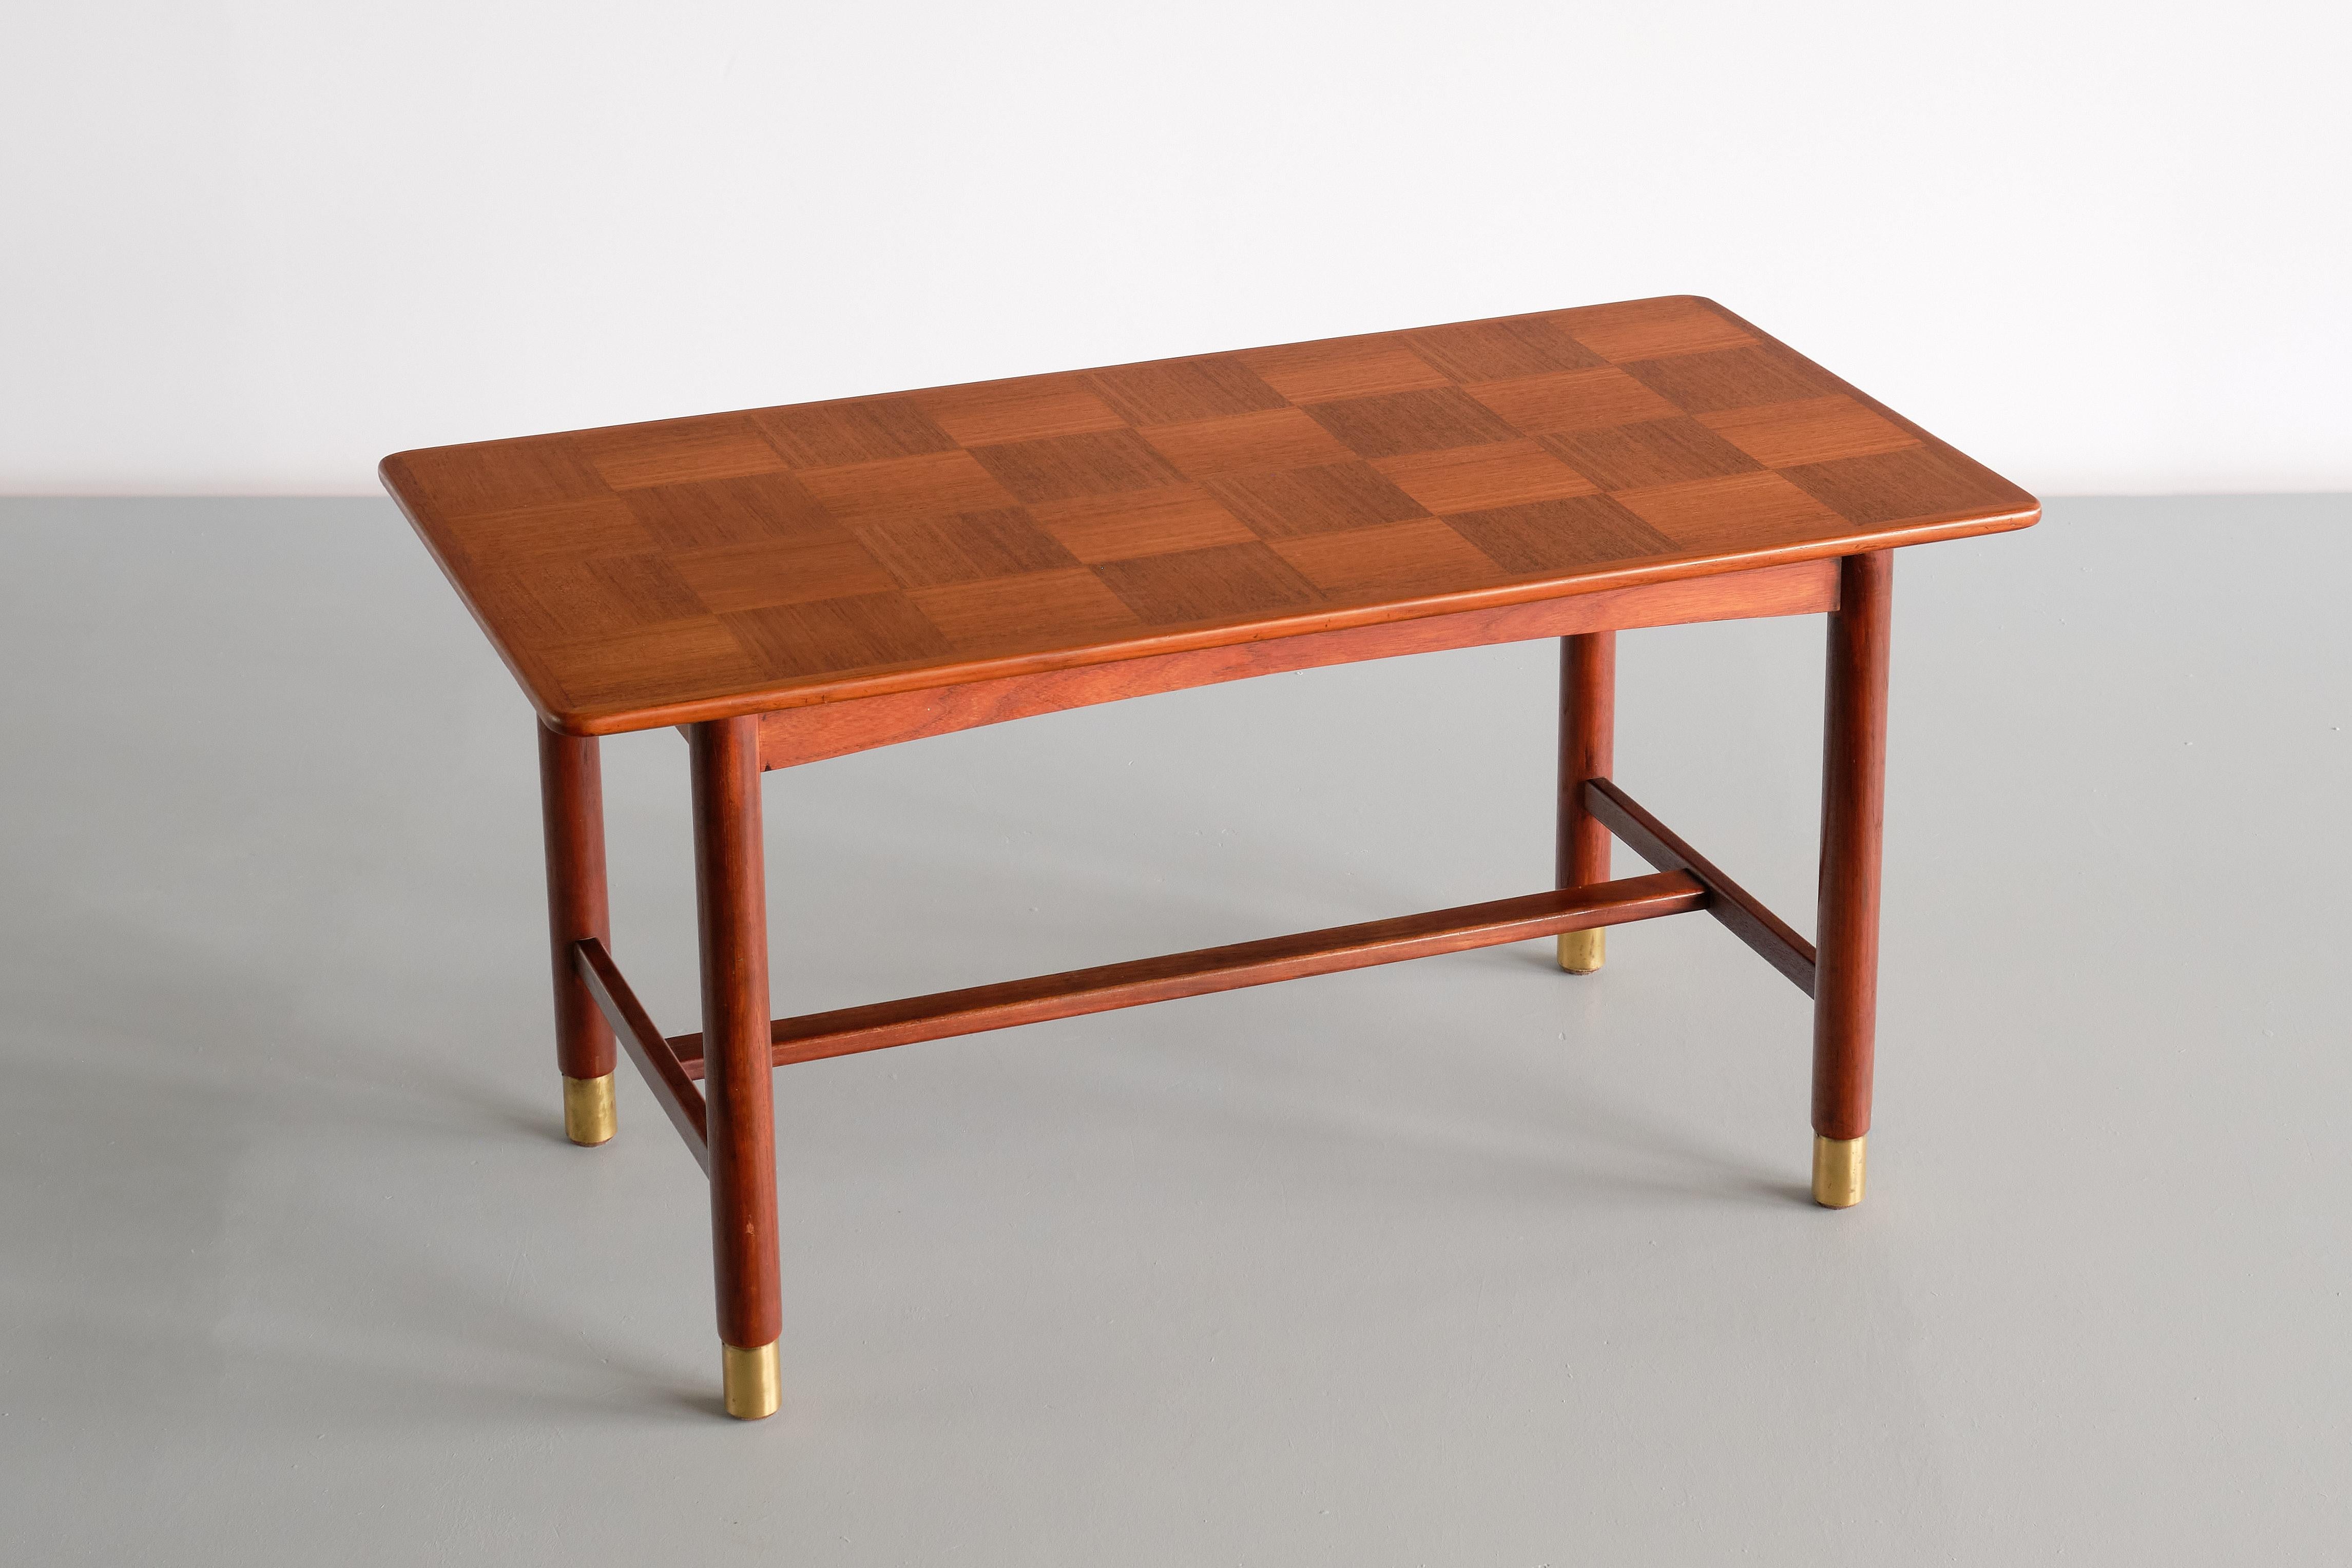 Cette élégante table basse a été conçue par Carl-Axel Acking et produite par SMF Svenska Möbelfabriken à Bodafors, en Suède, dans les années 1950. Le design est marqué par le plateau rectangulaire en teck, plaqué d'un beau motif en damier.